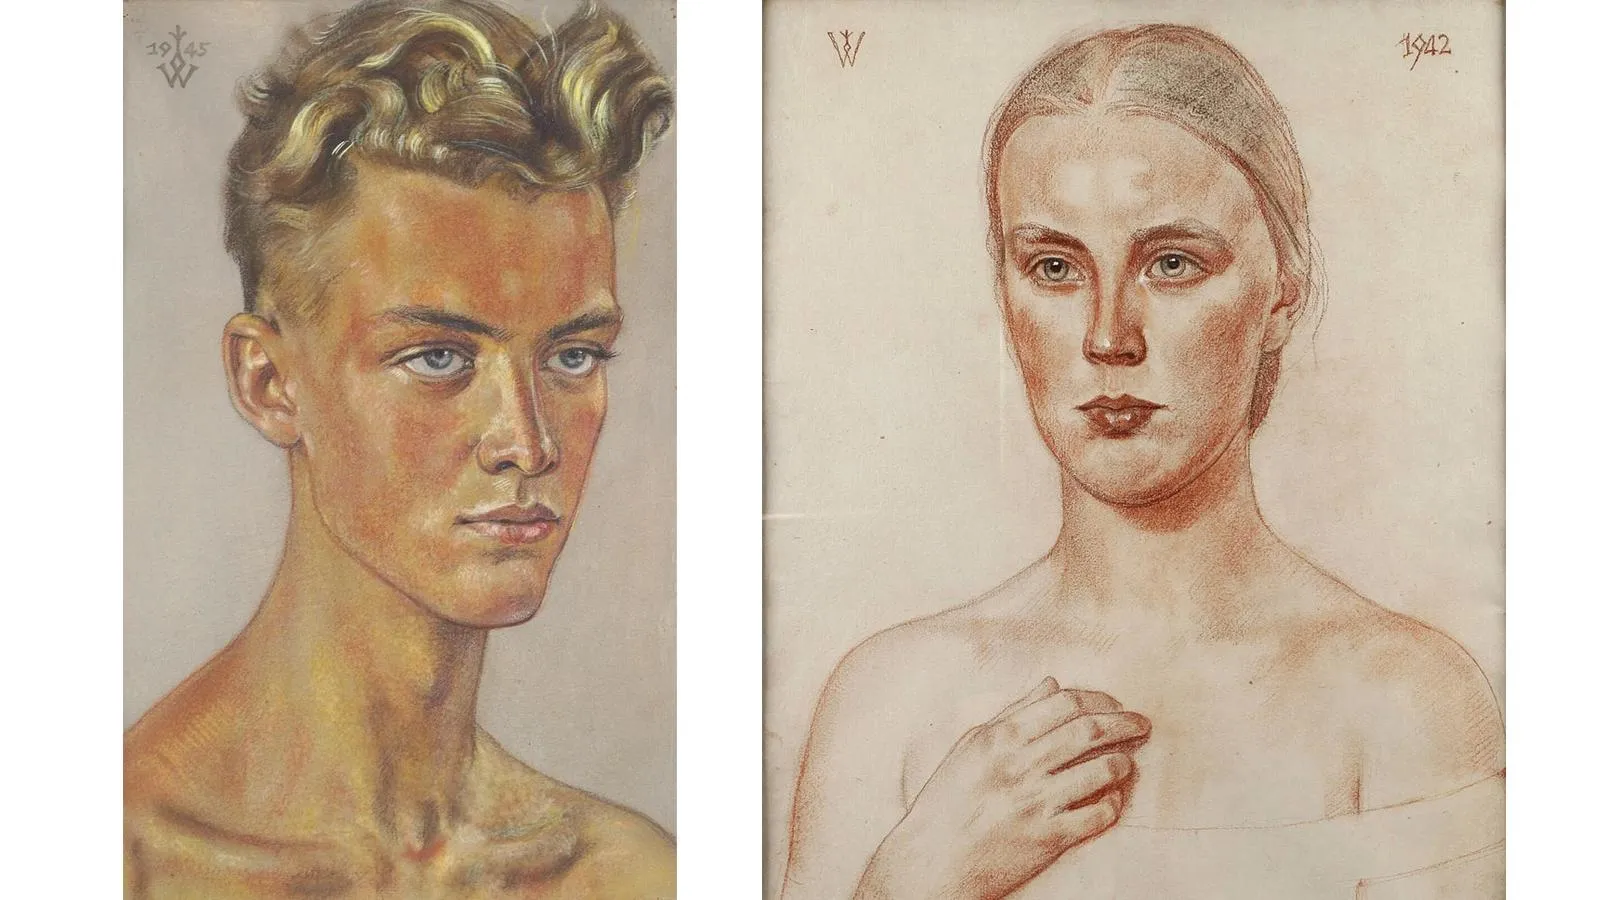 Портреты «нордических расовых типов» авторства Вольфганга Вилльриха, 1945 и 1942 годы